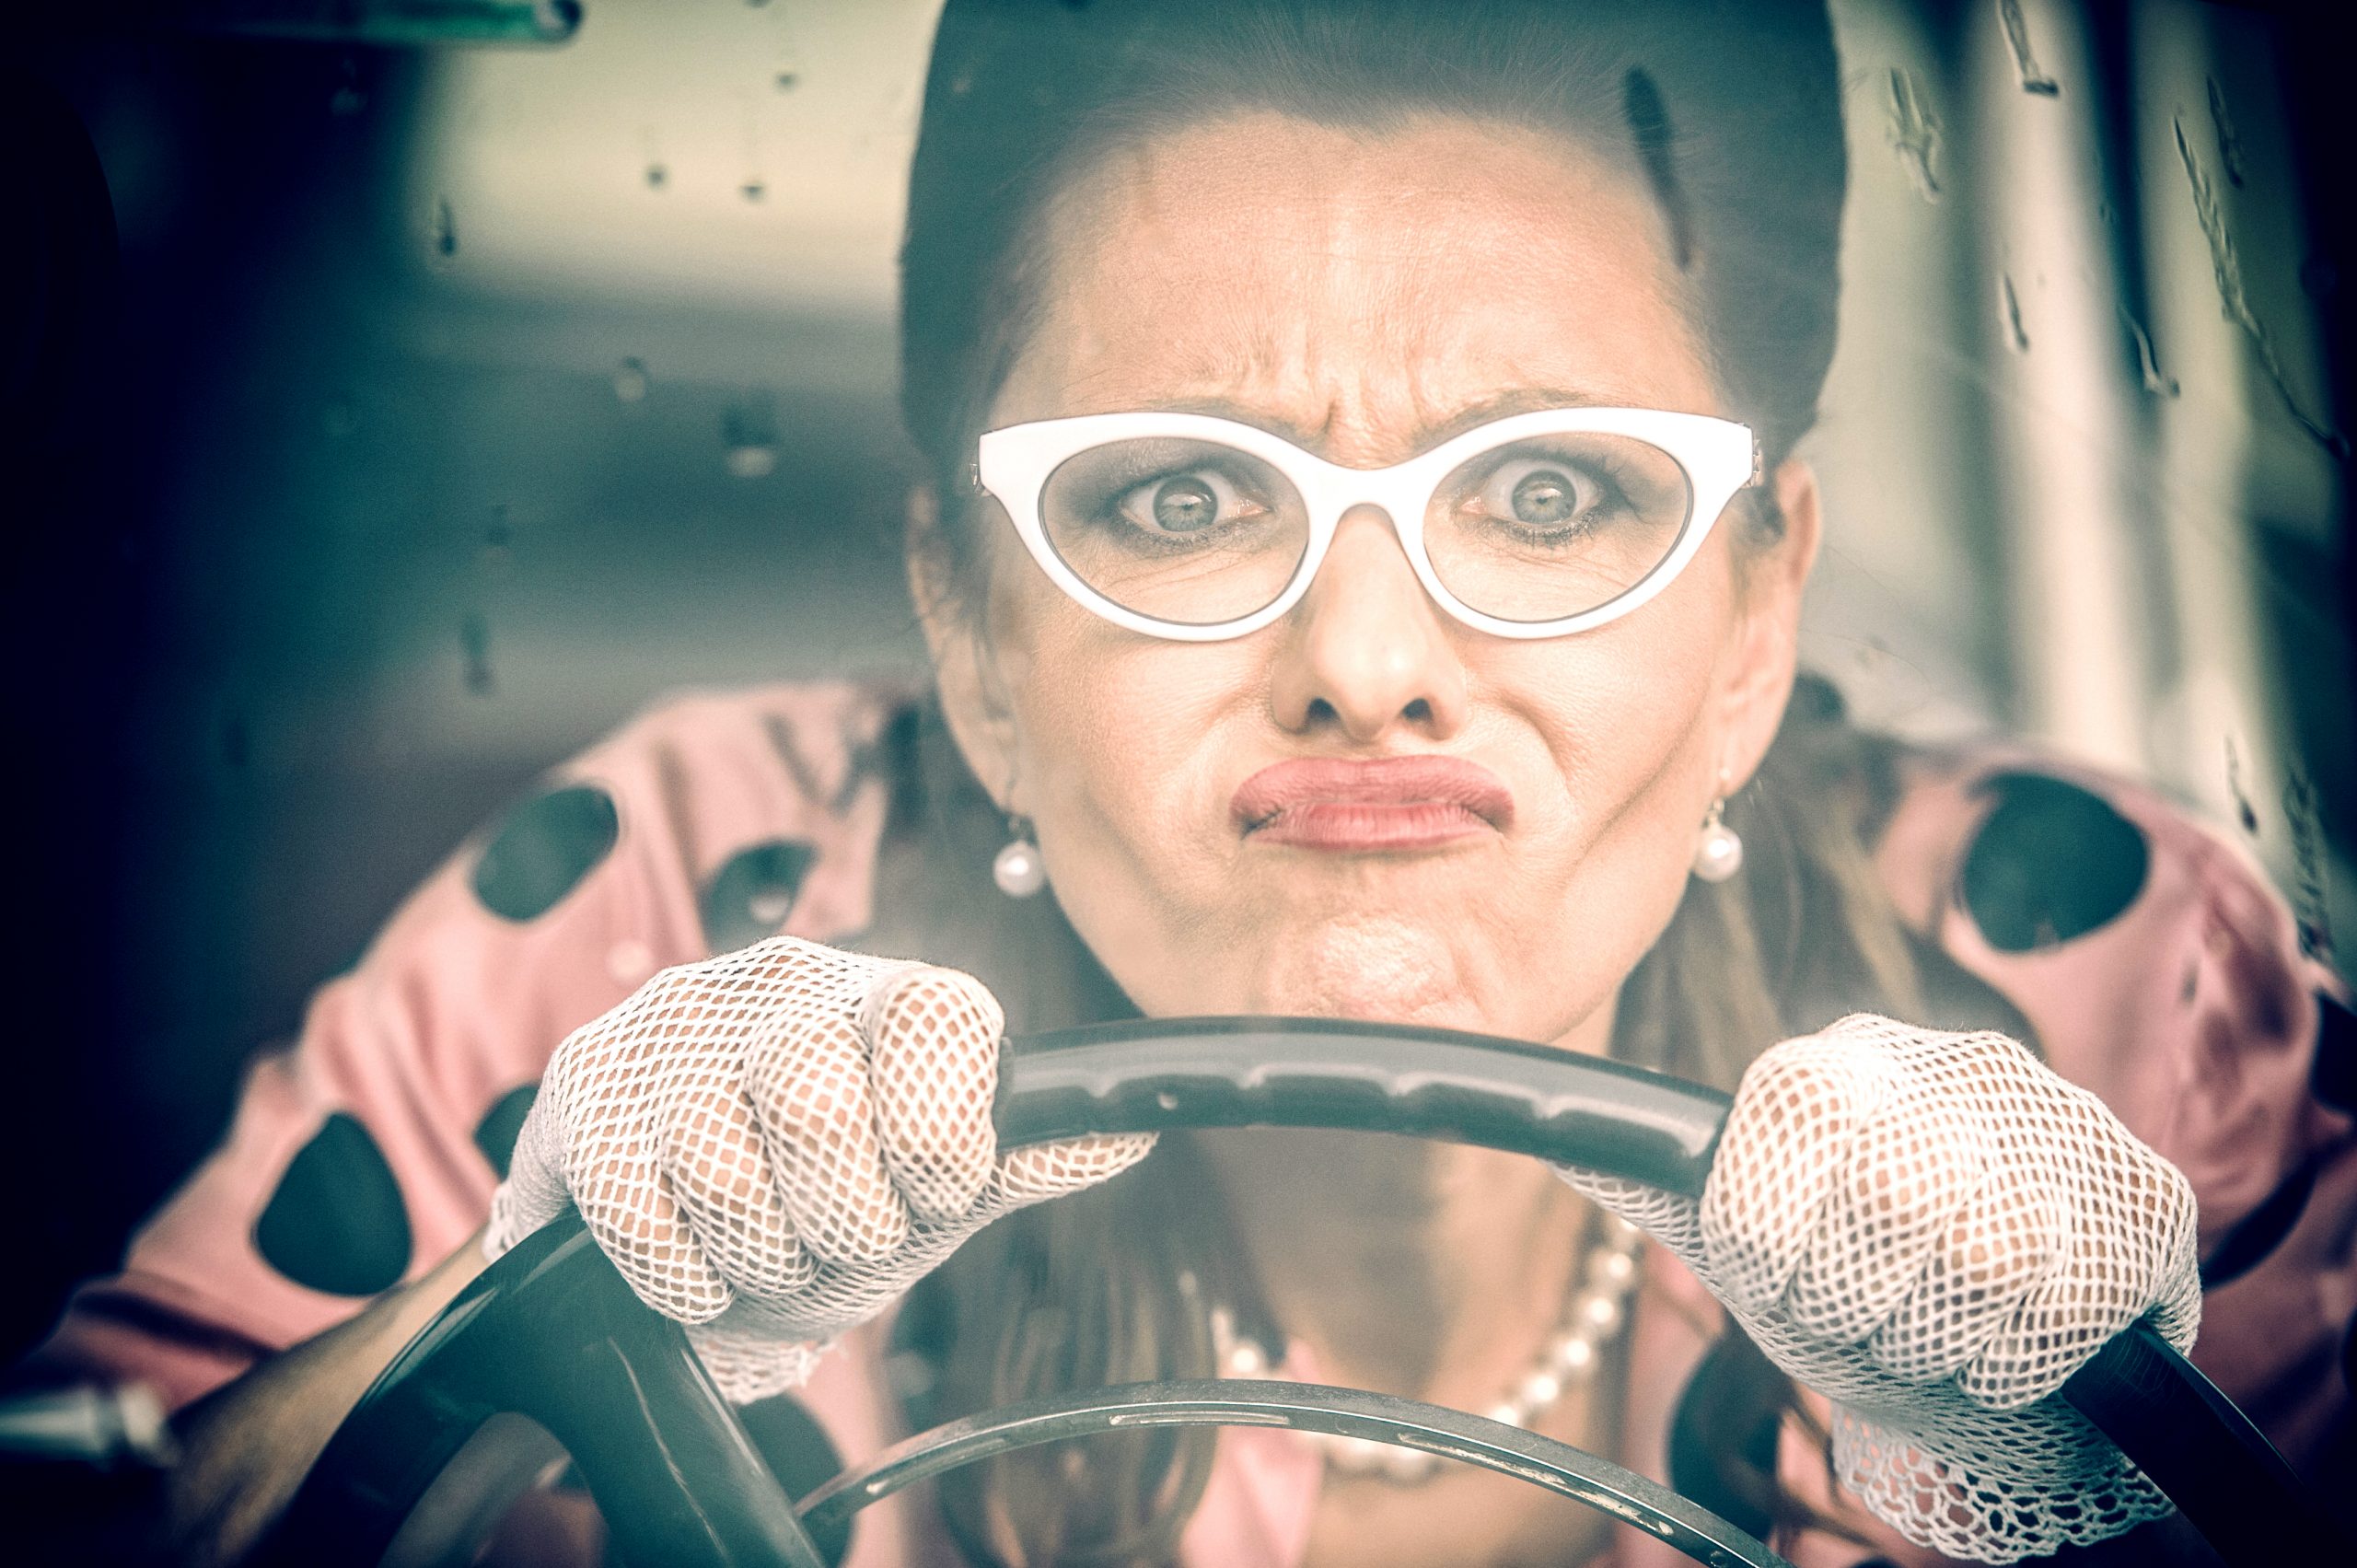 Αμαξοφοβία: όταν η φοβία της οδήγησης επηρεάζει τη ζωή σου